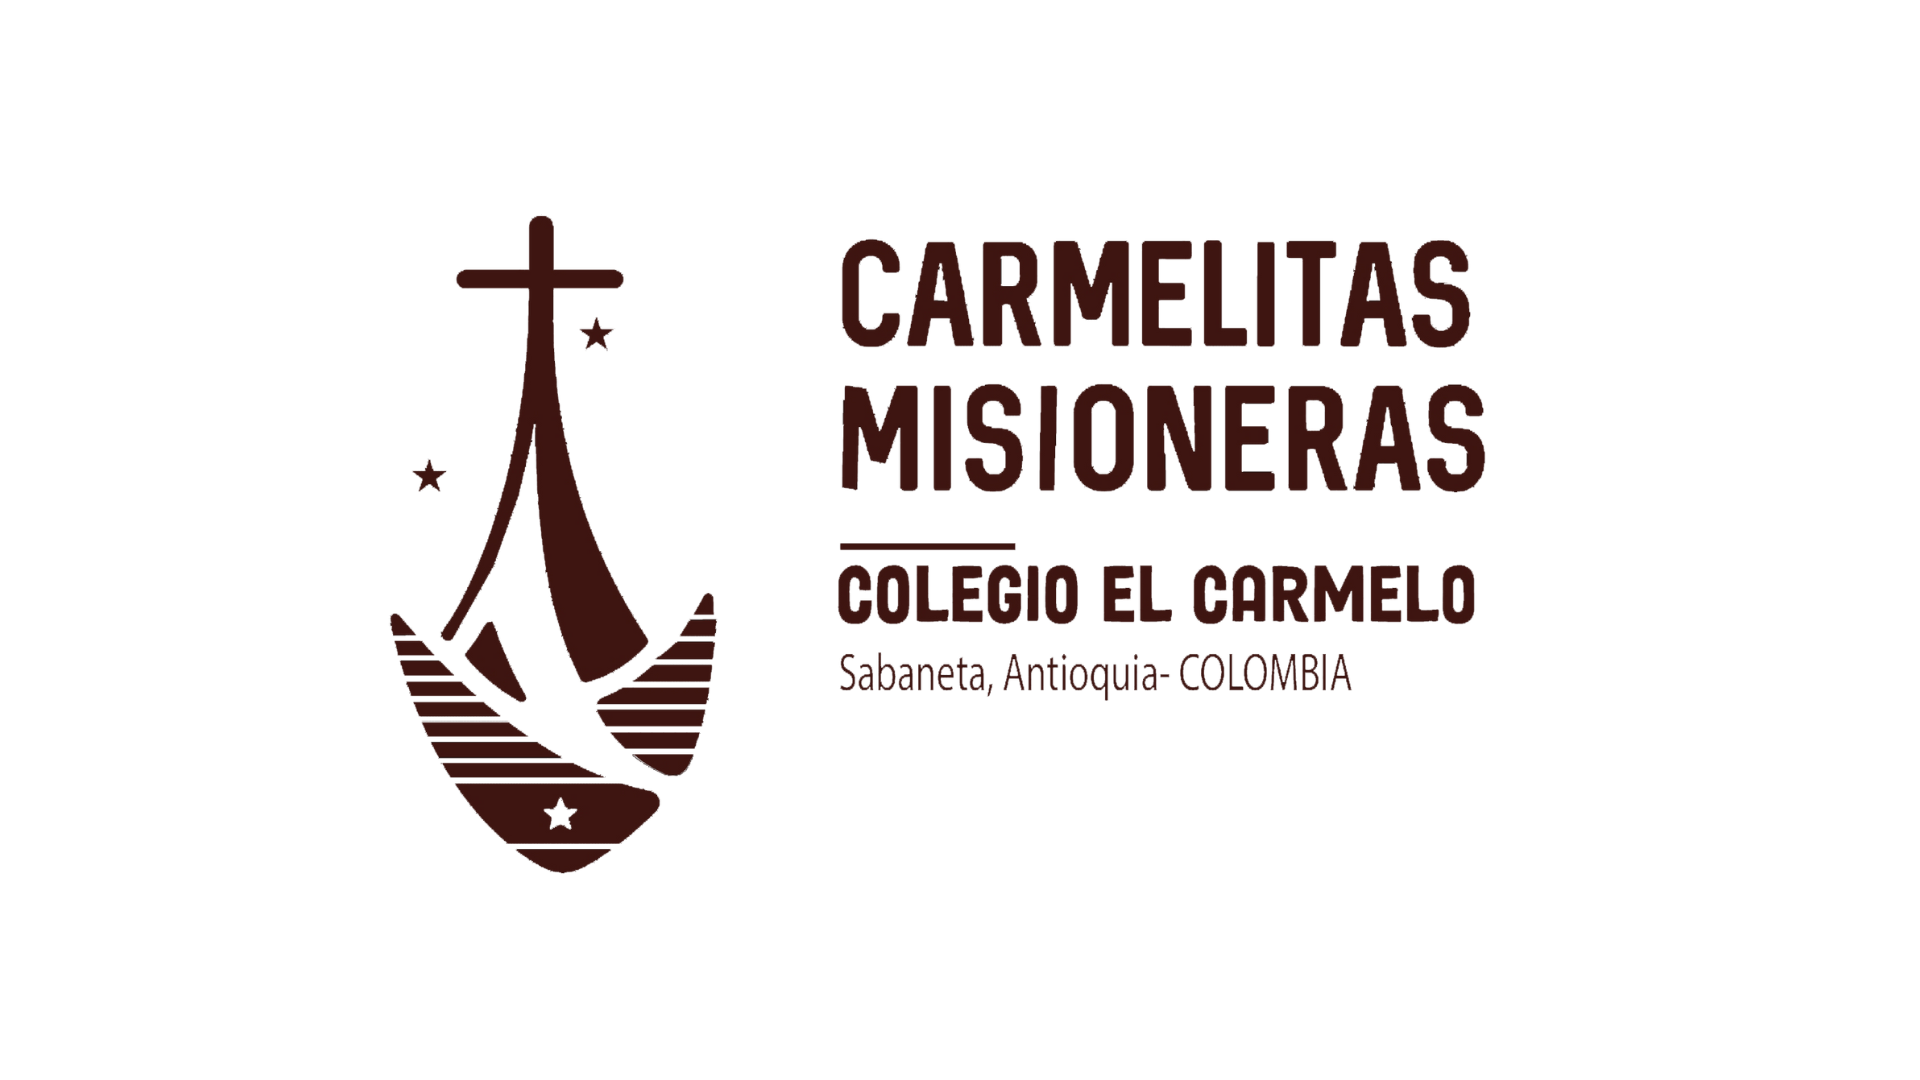 Carmelitas Misioneras Colegio el Carmelo Sabaneta